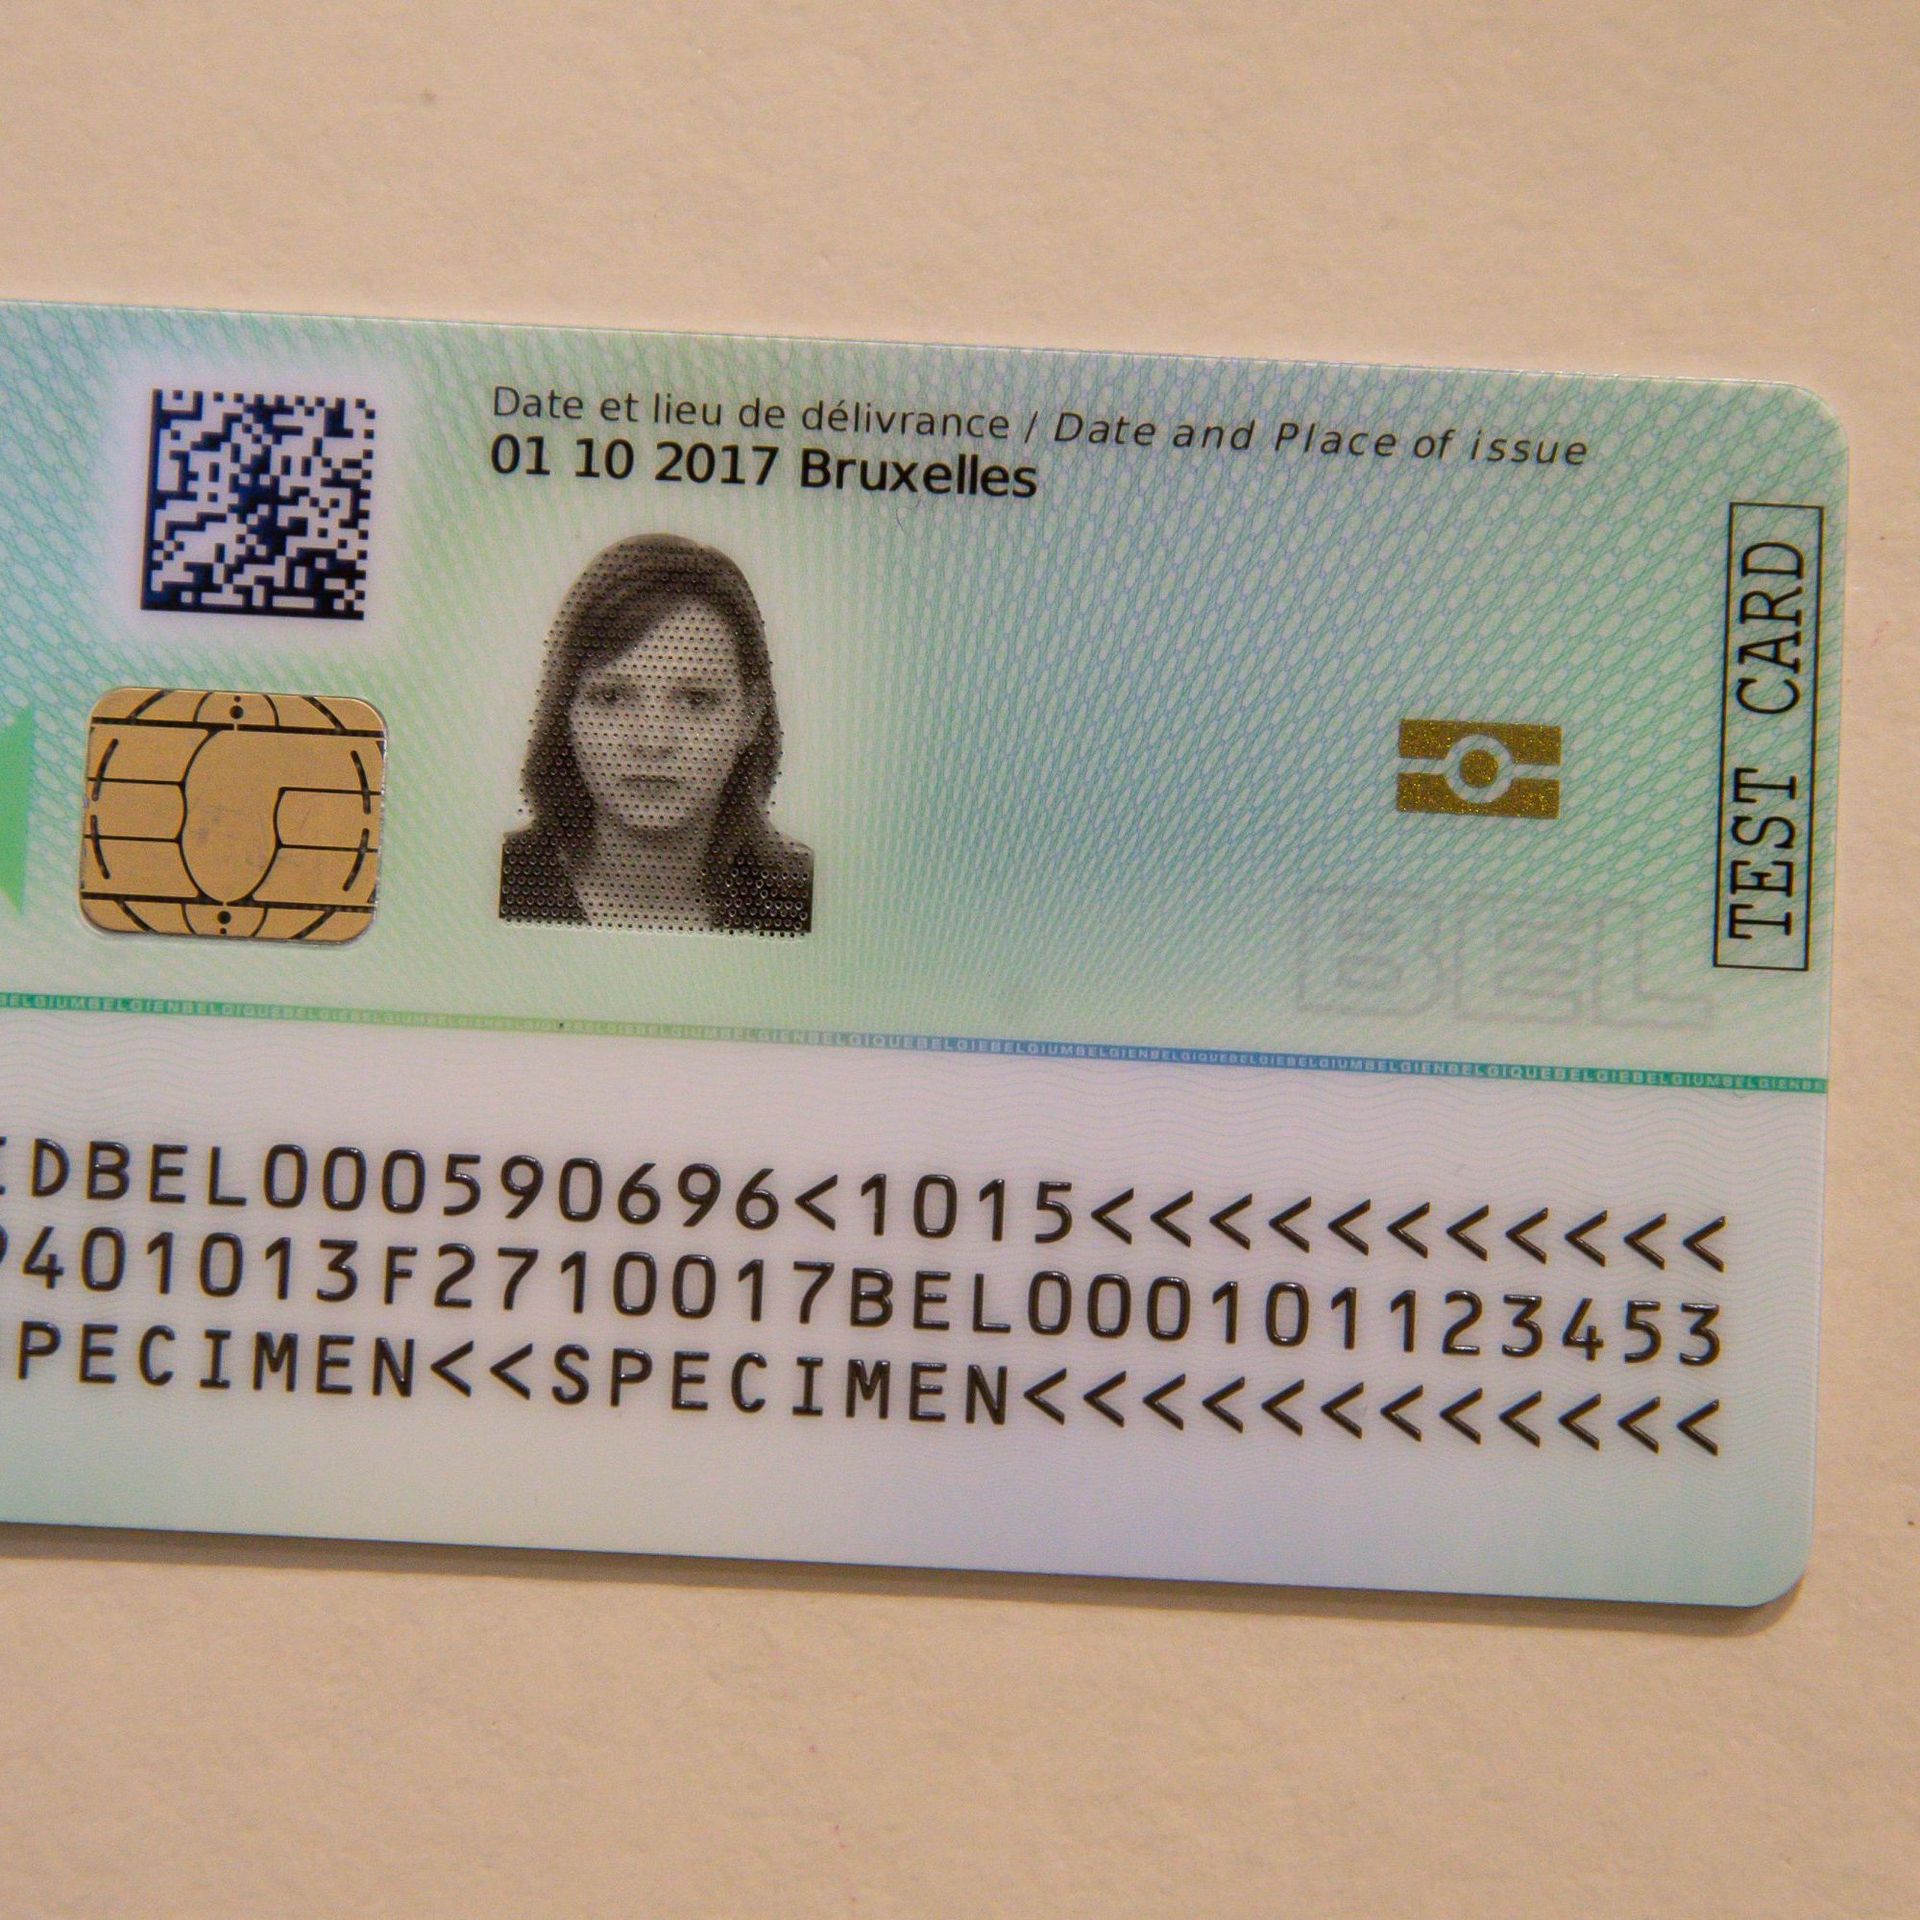 Lecteur de carte d'identité belge professionnel - Lecteur de carte